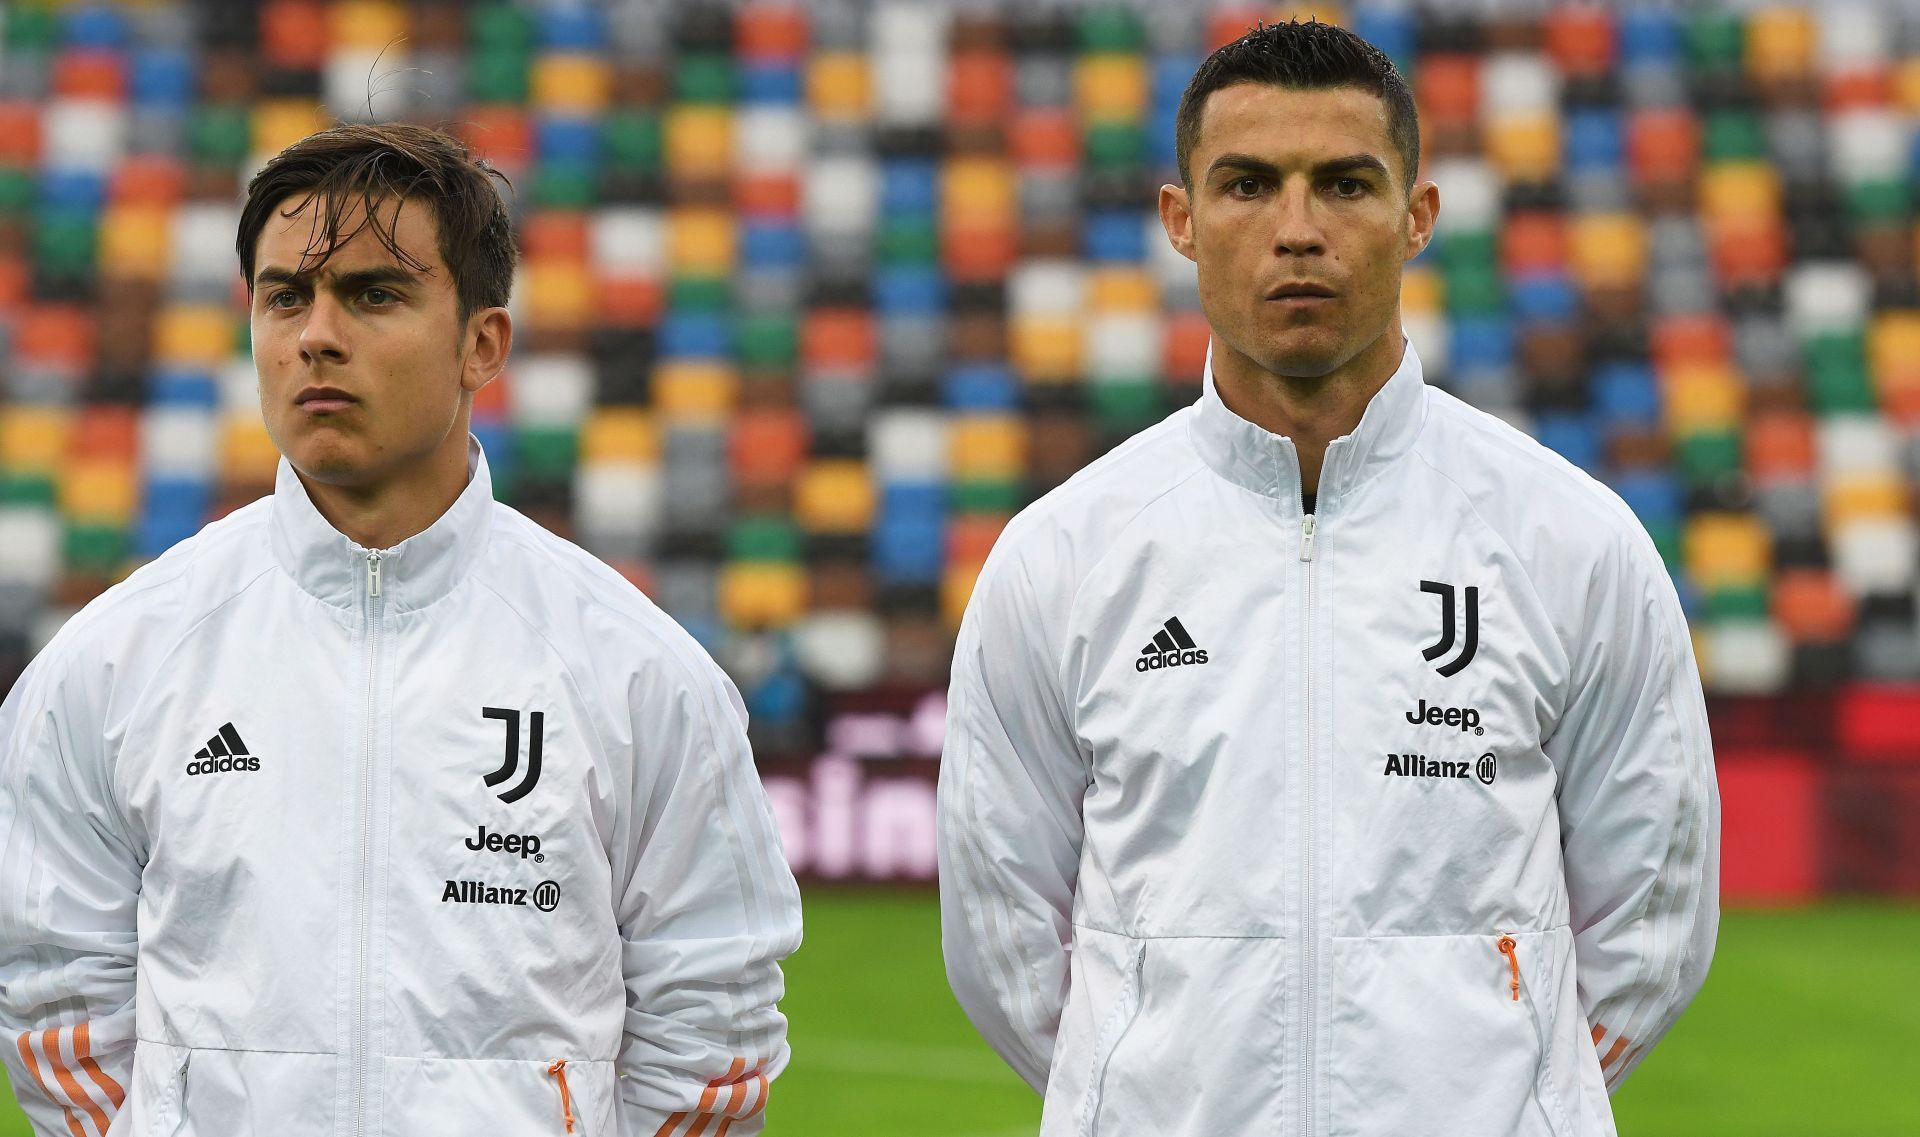 Dybala and Ronaldo were teammates at Juve